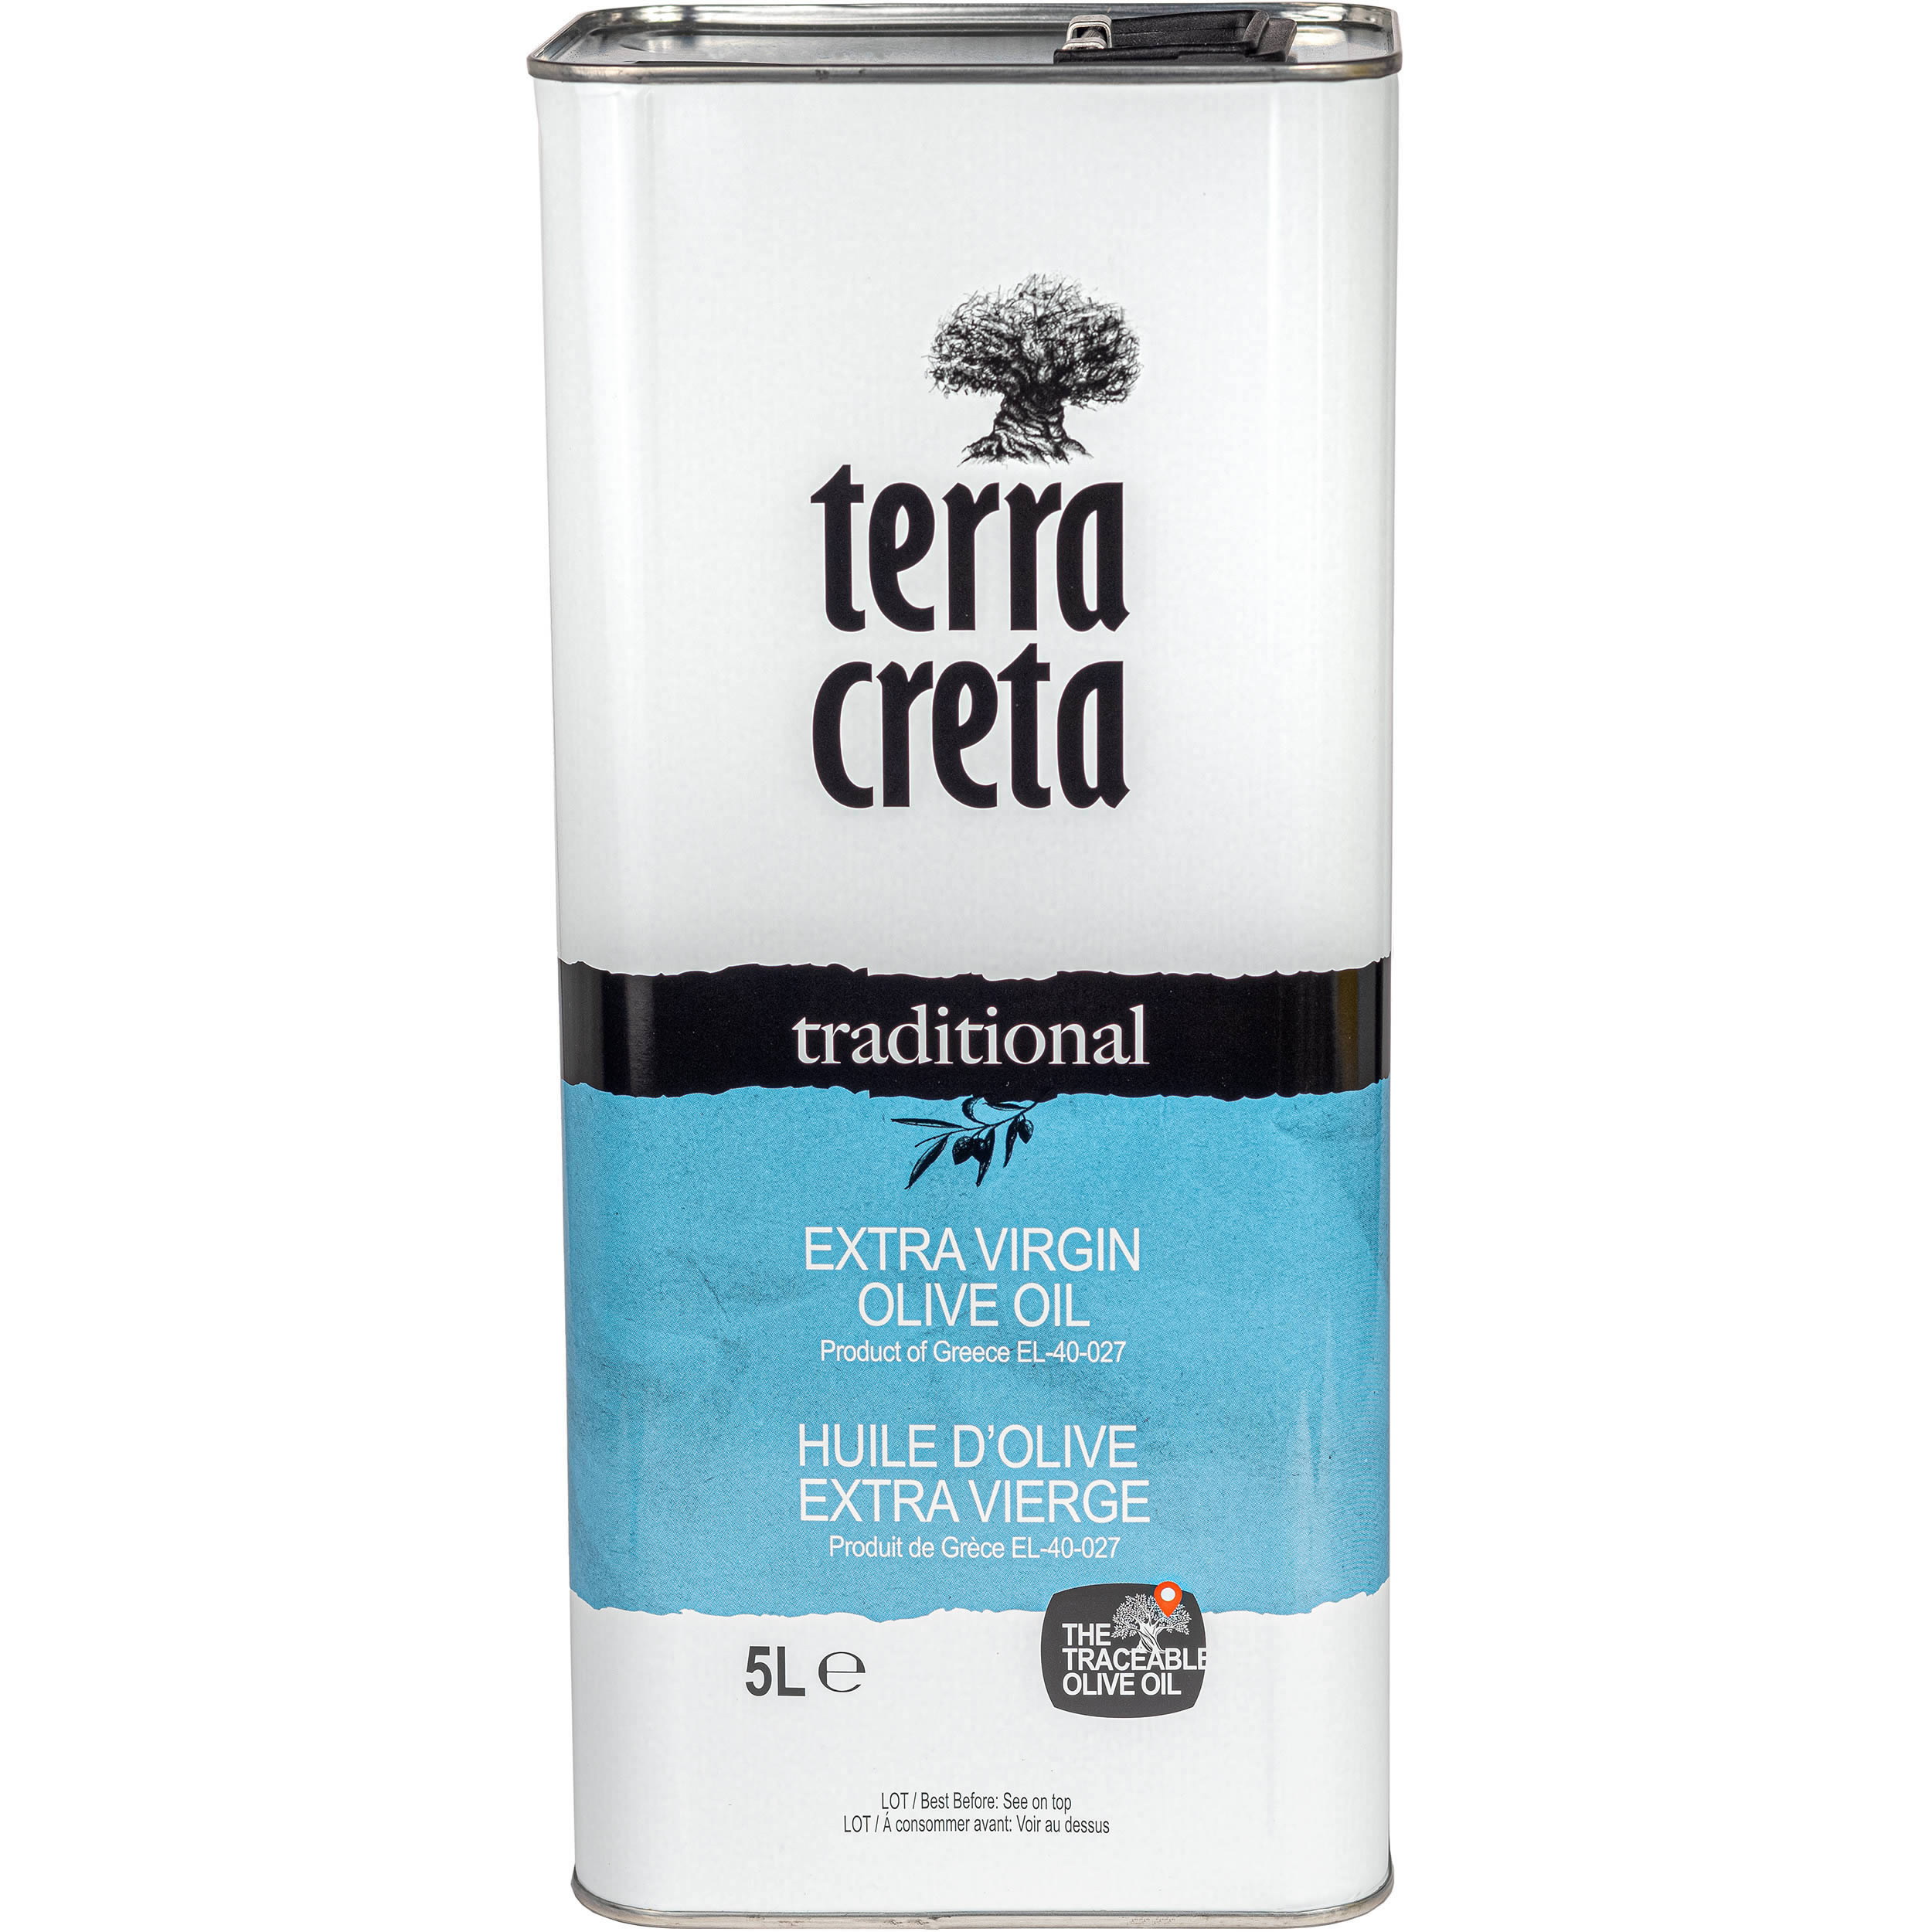 Terra Creta - Extra natives Olivenöl "traditional" extra 5 l